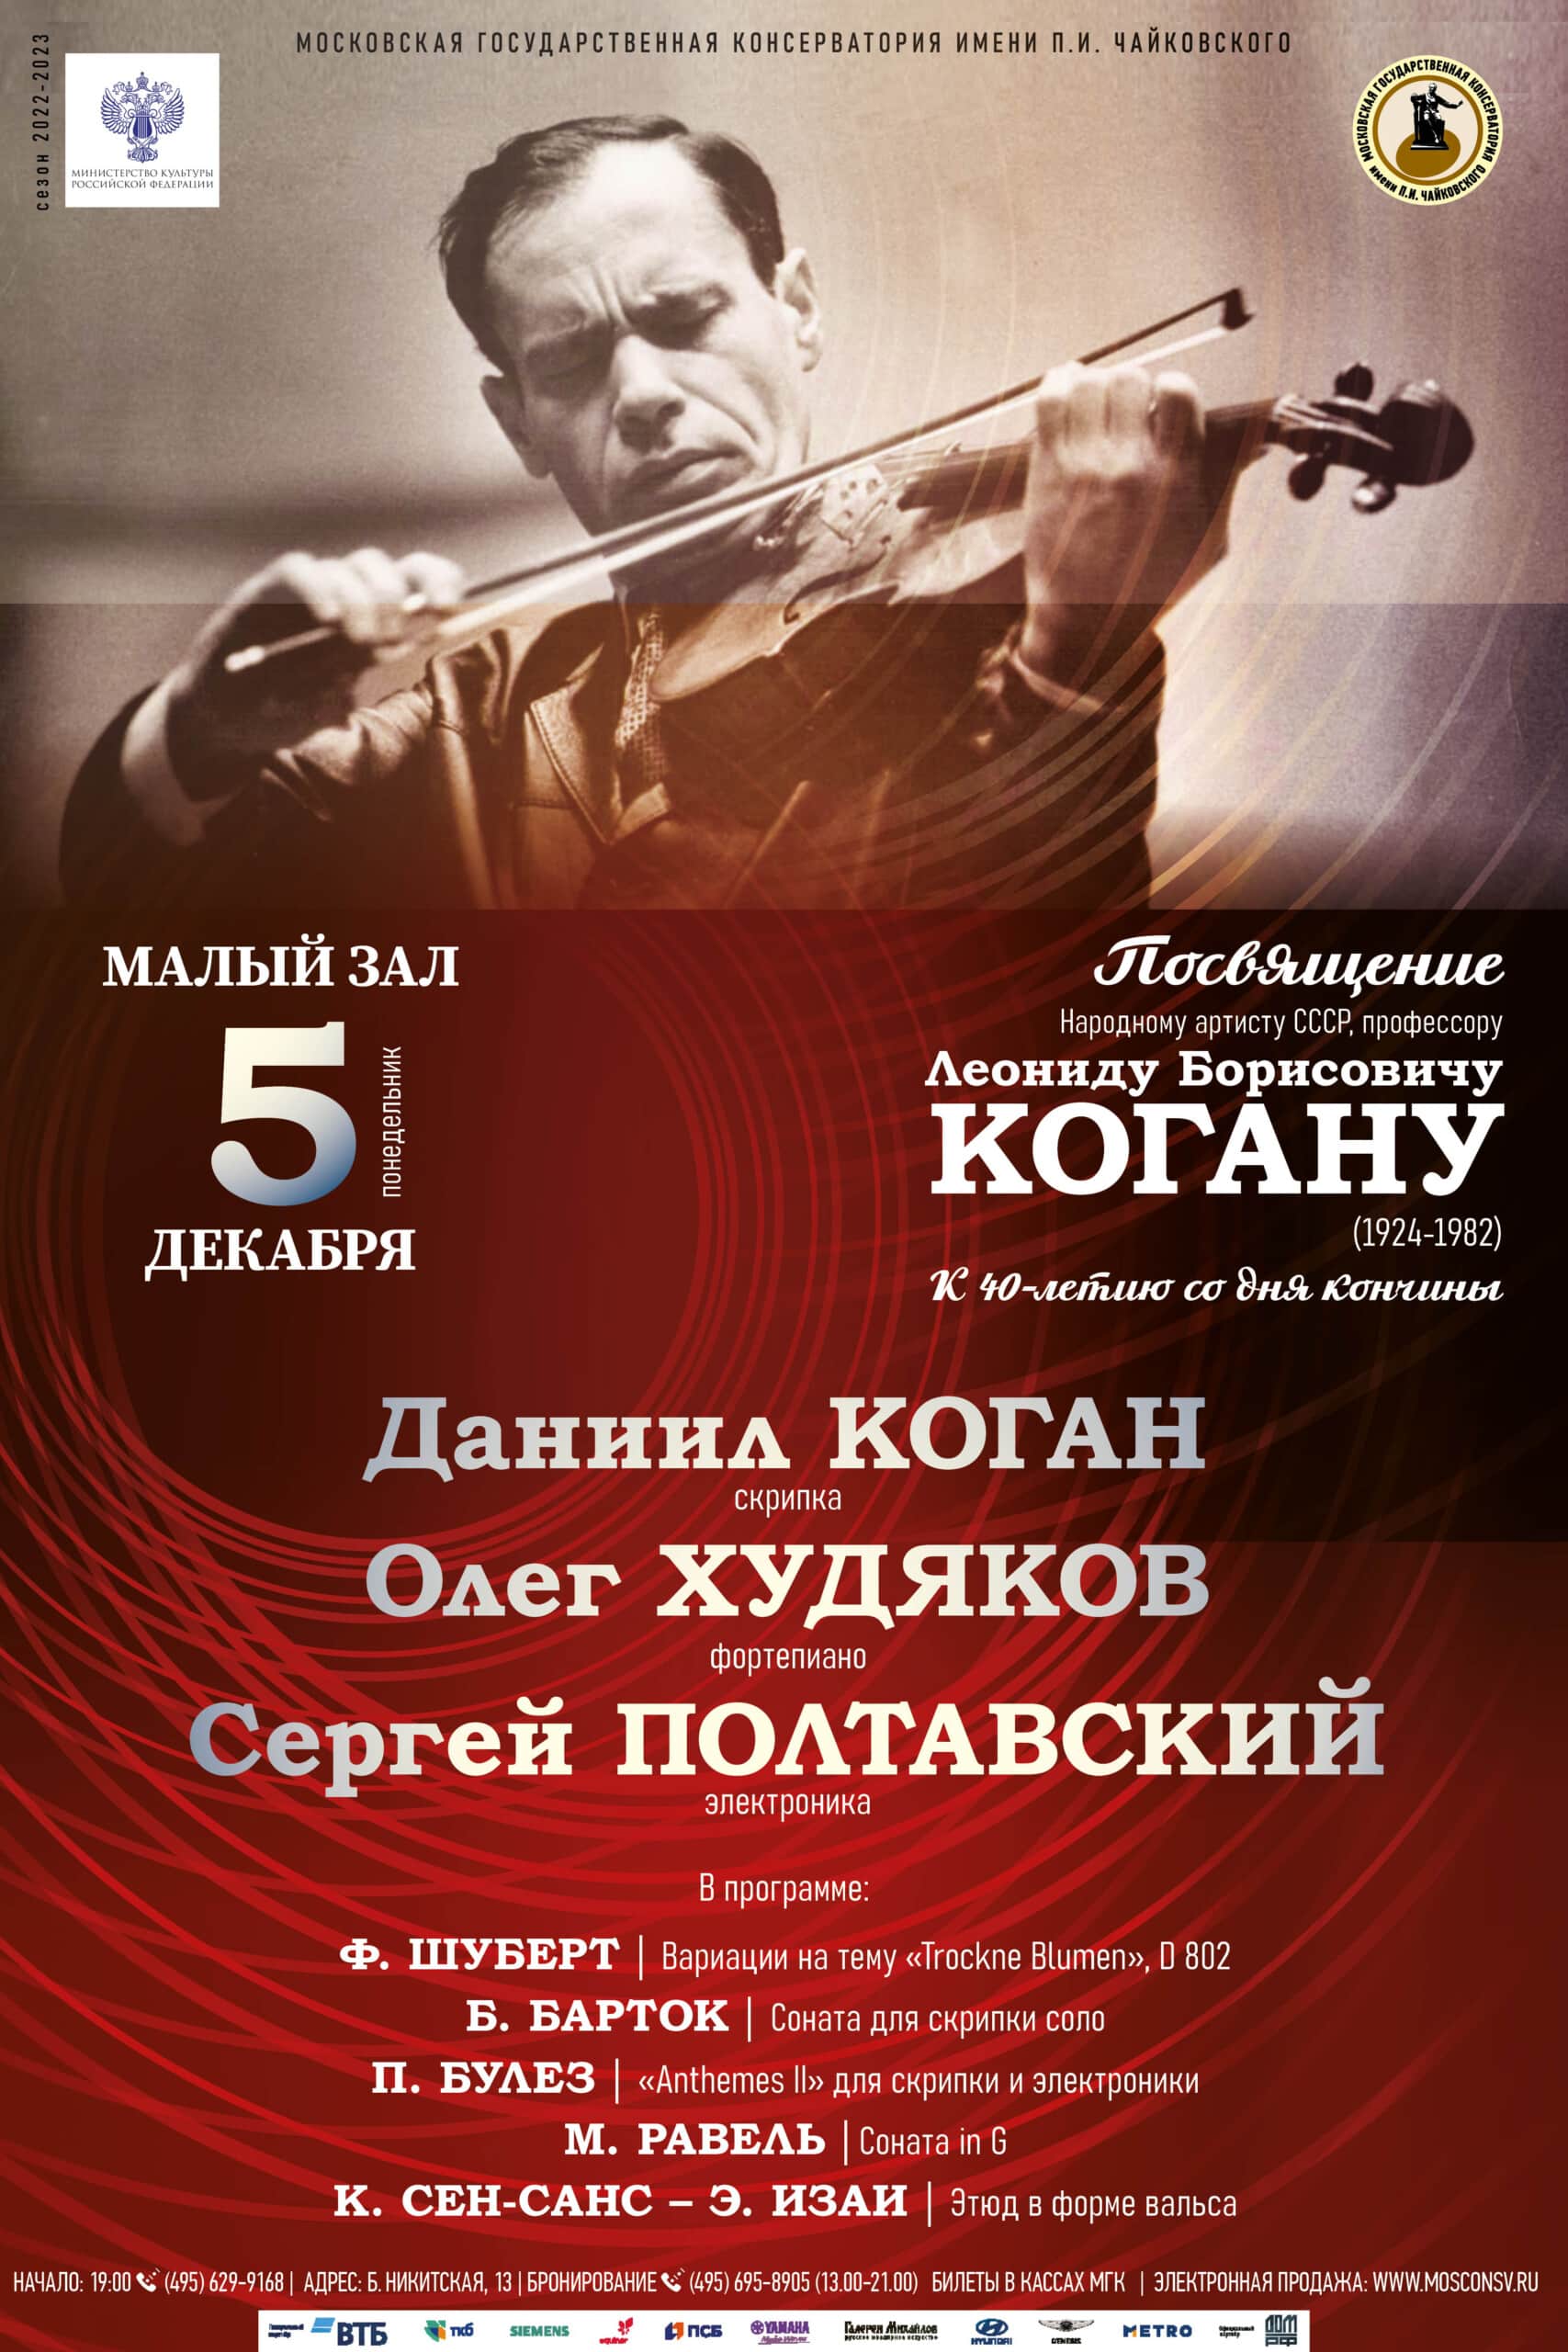 Концерт памяти Леонида Когана пройдет в Москве